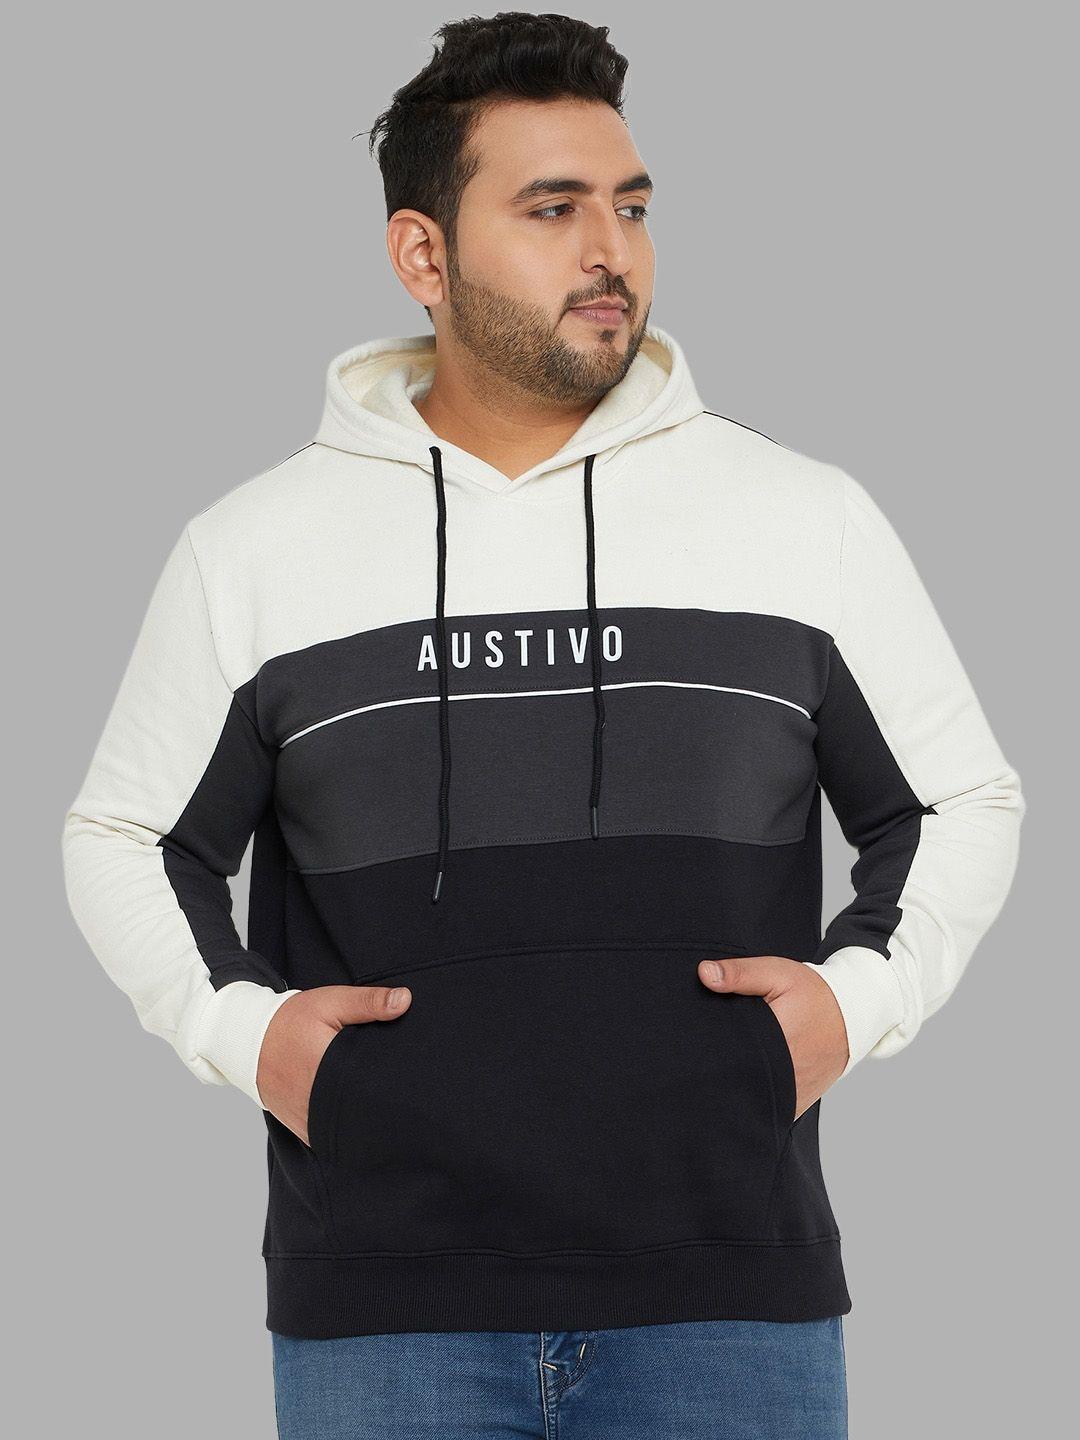 austivo colourblocked hooded pullover